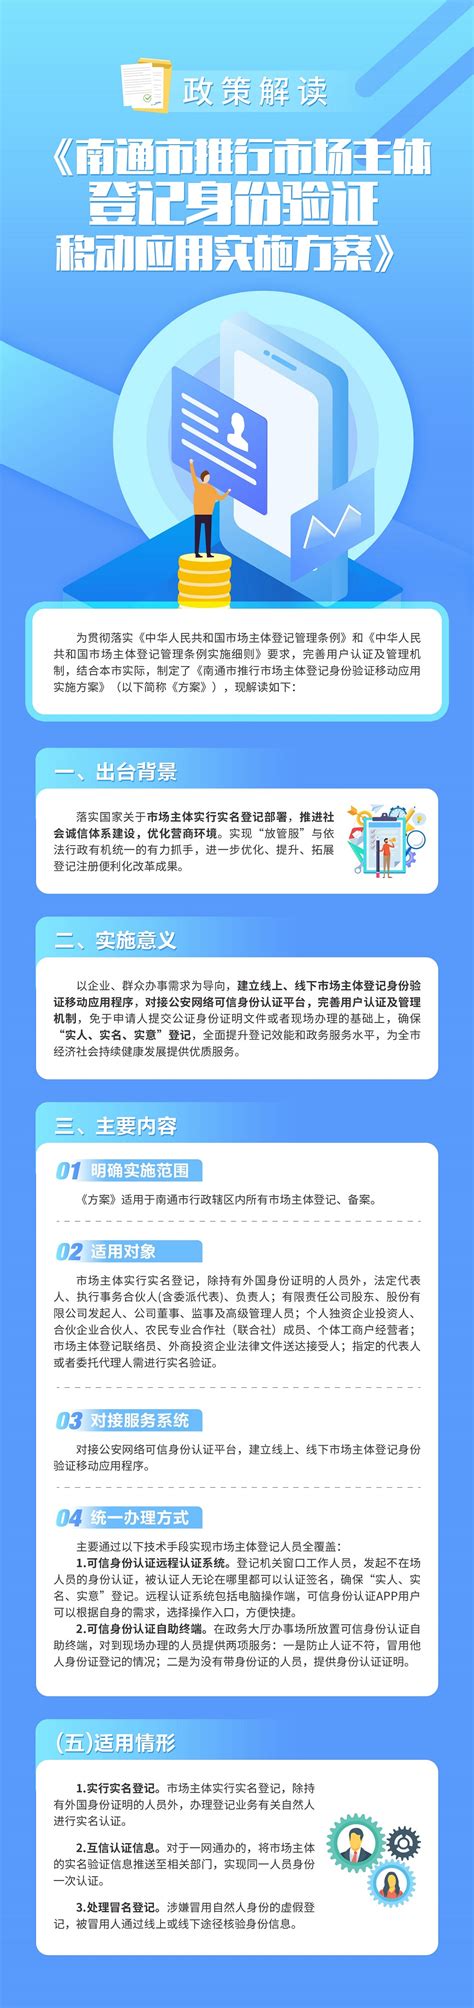 中国移动实名制app-移动实名认证客户端-移动实名制app-绿色资源网